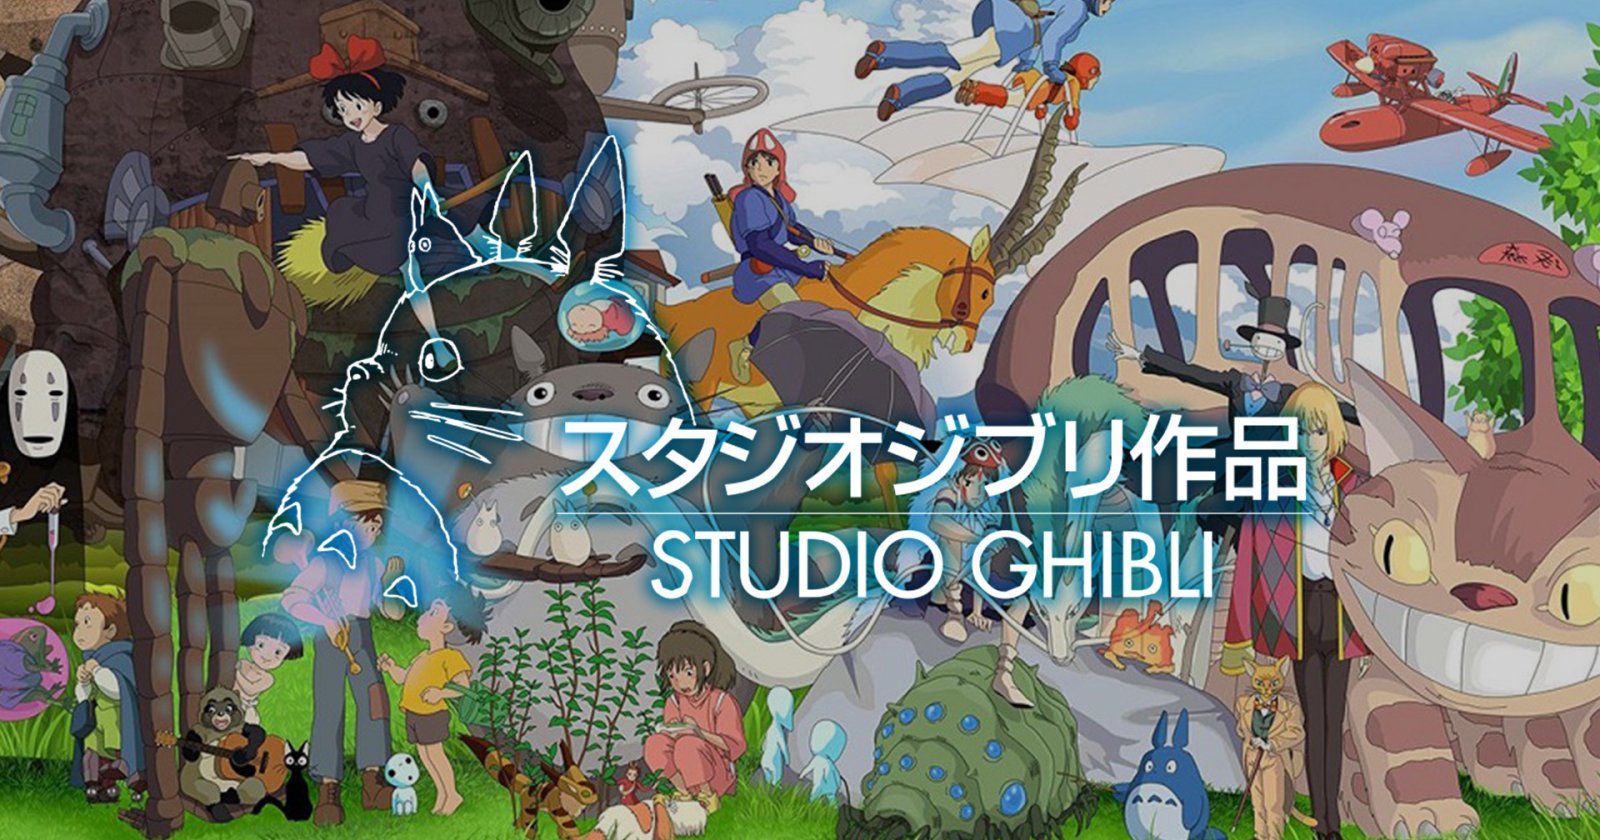 ท่องโลกแห่งจินตนาการ จุดกำเนิดกว่าจะเป็น Studio Ghibli